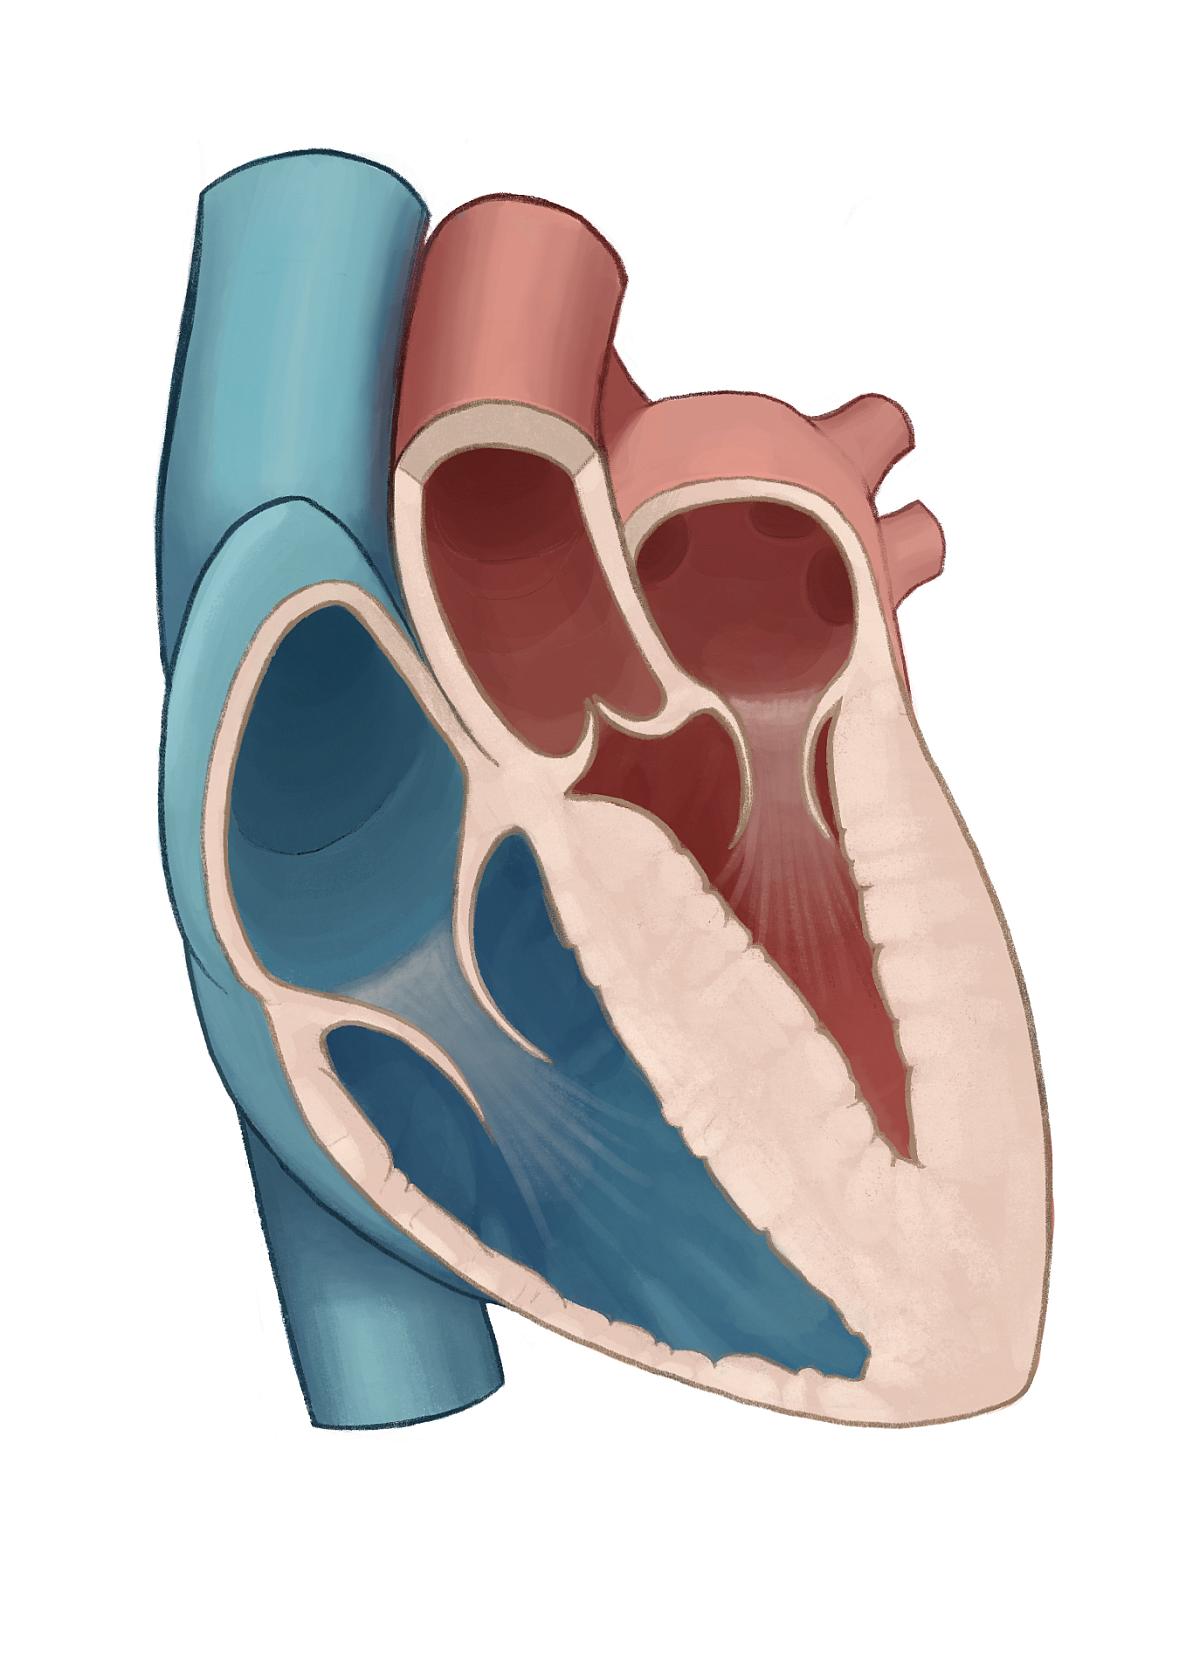 Diffuse hypertrophic cardiomyopathy